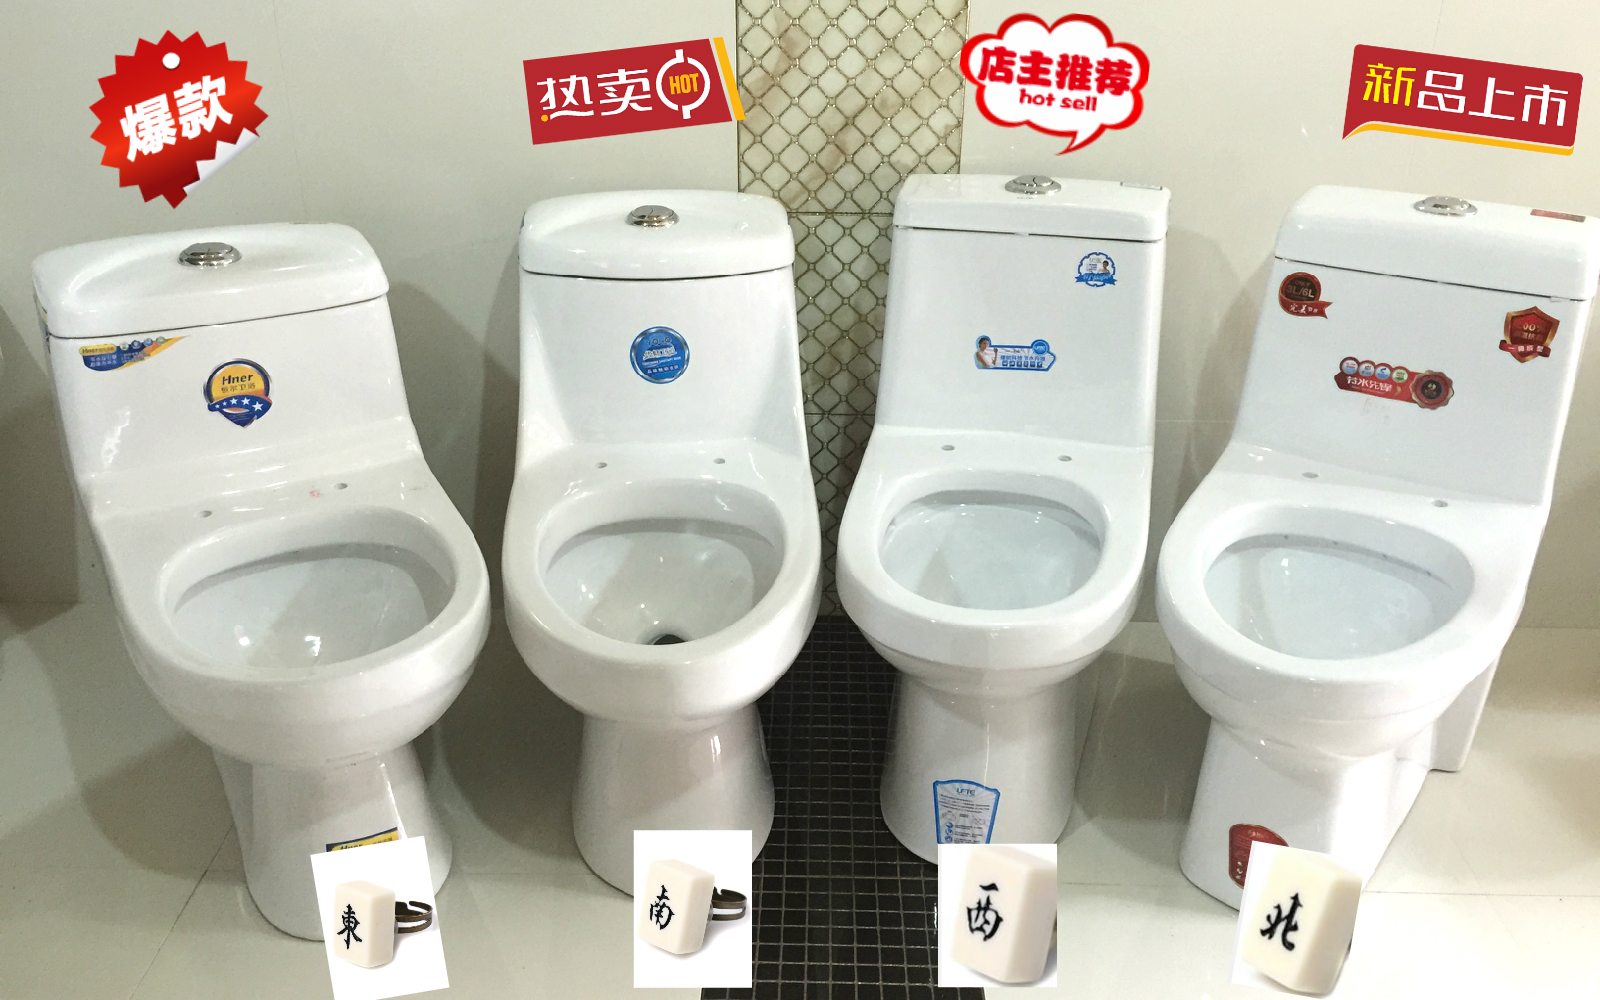 连体抽水马桶直冲虹吸式节水座便器洁具上海市区可送货可上门安装